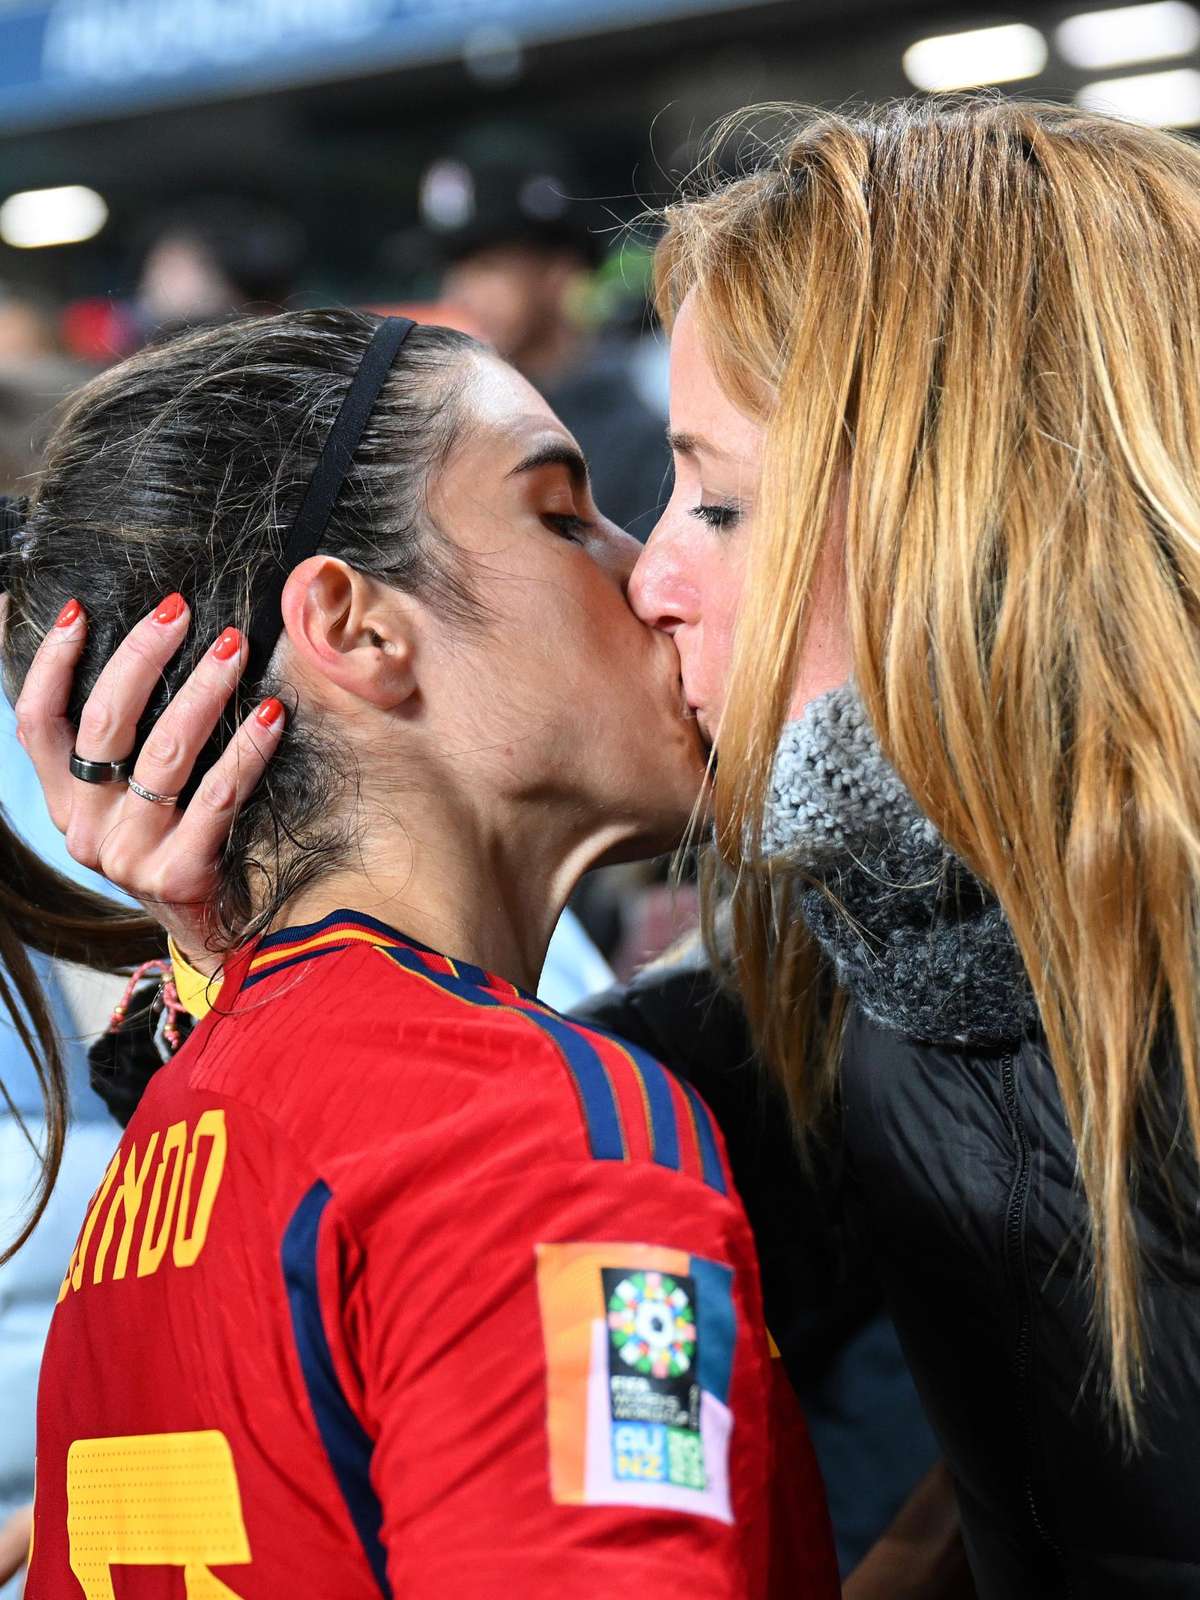 Saiba qual jogador da Copa é o crush da herdeira do trono espanhol - Fotos  - R7 Copa do Mundo